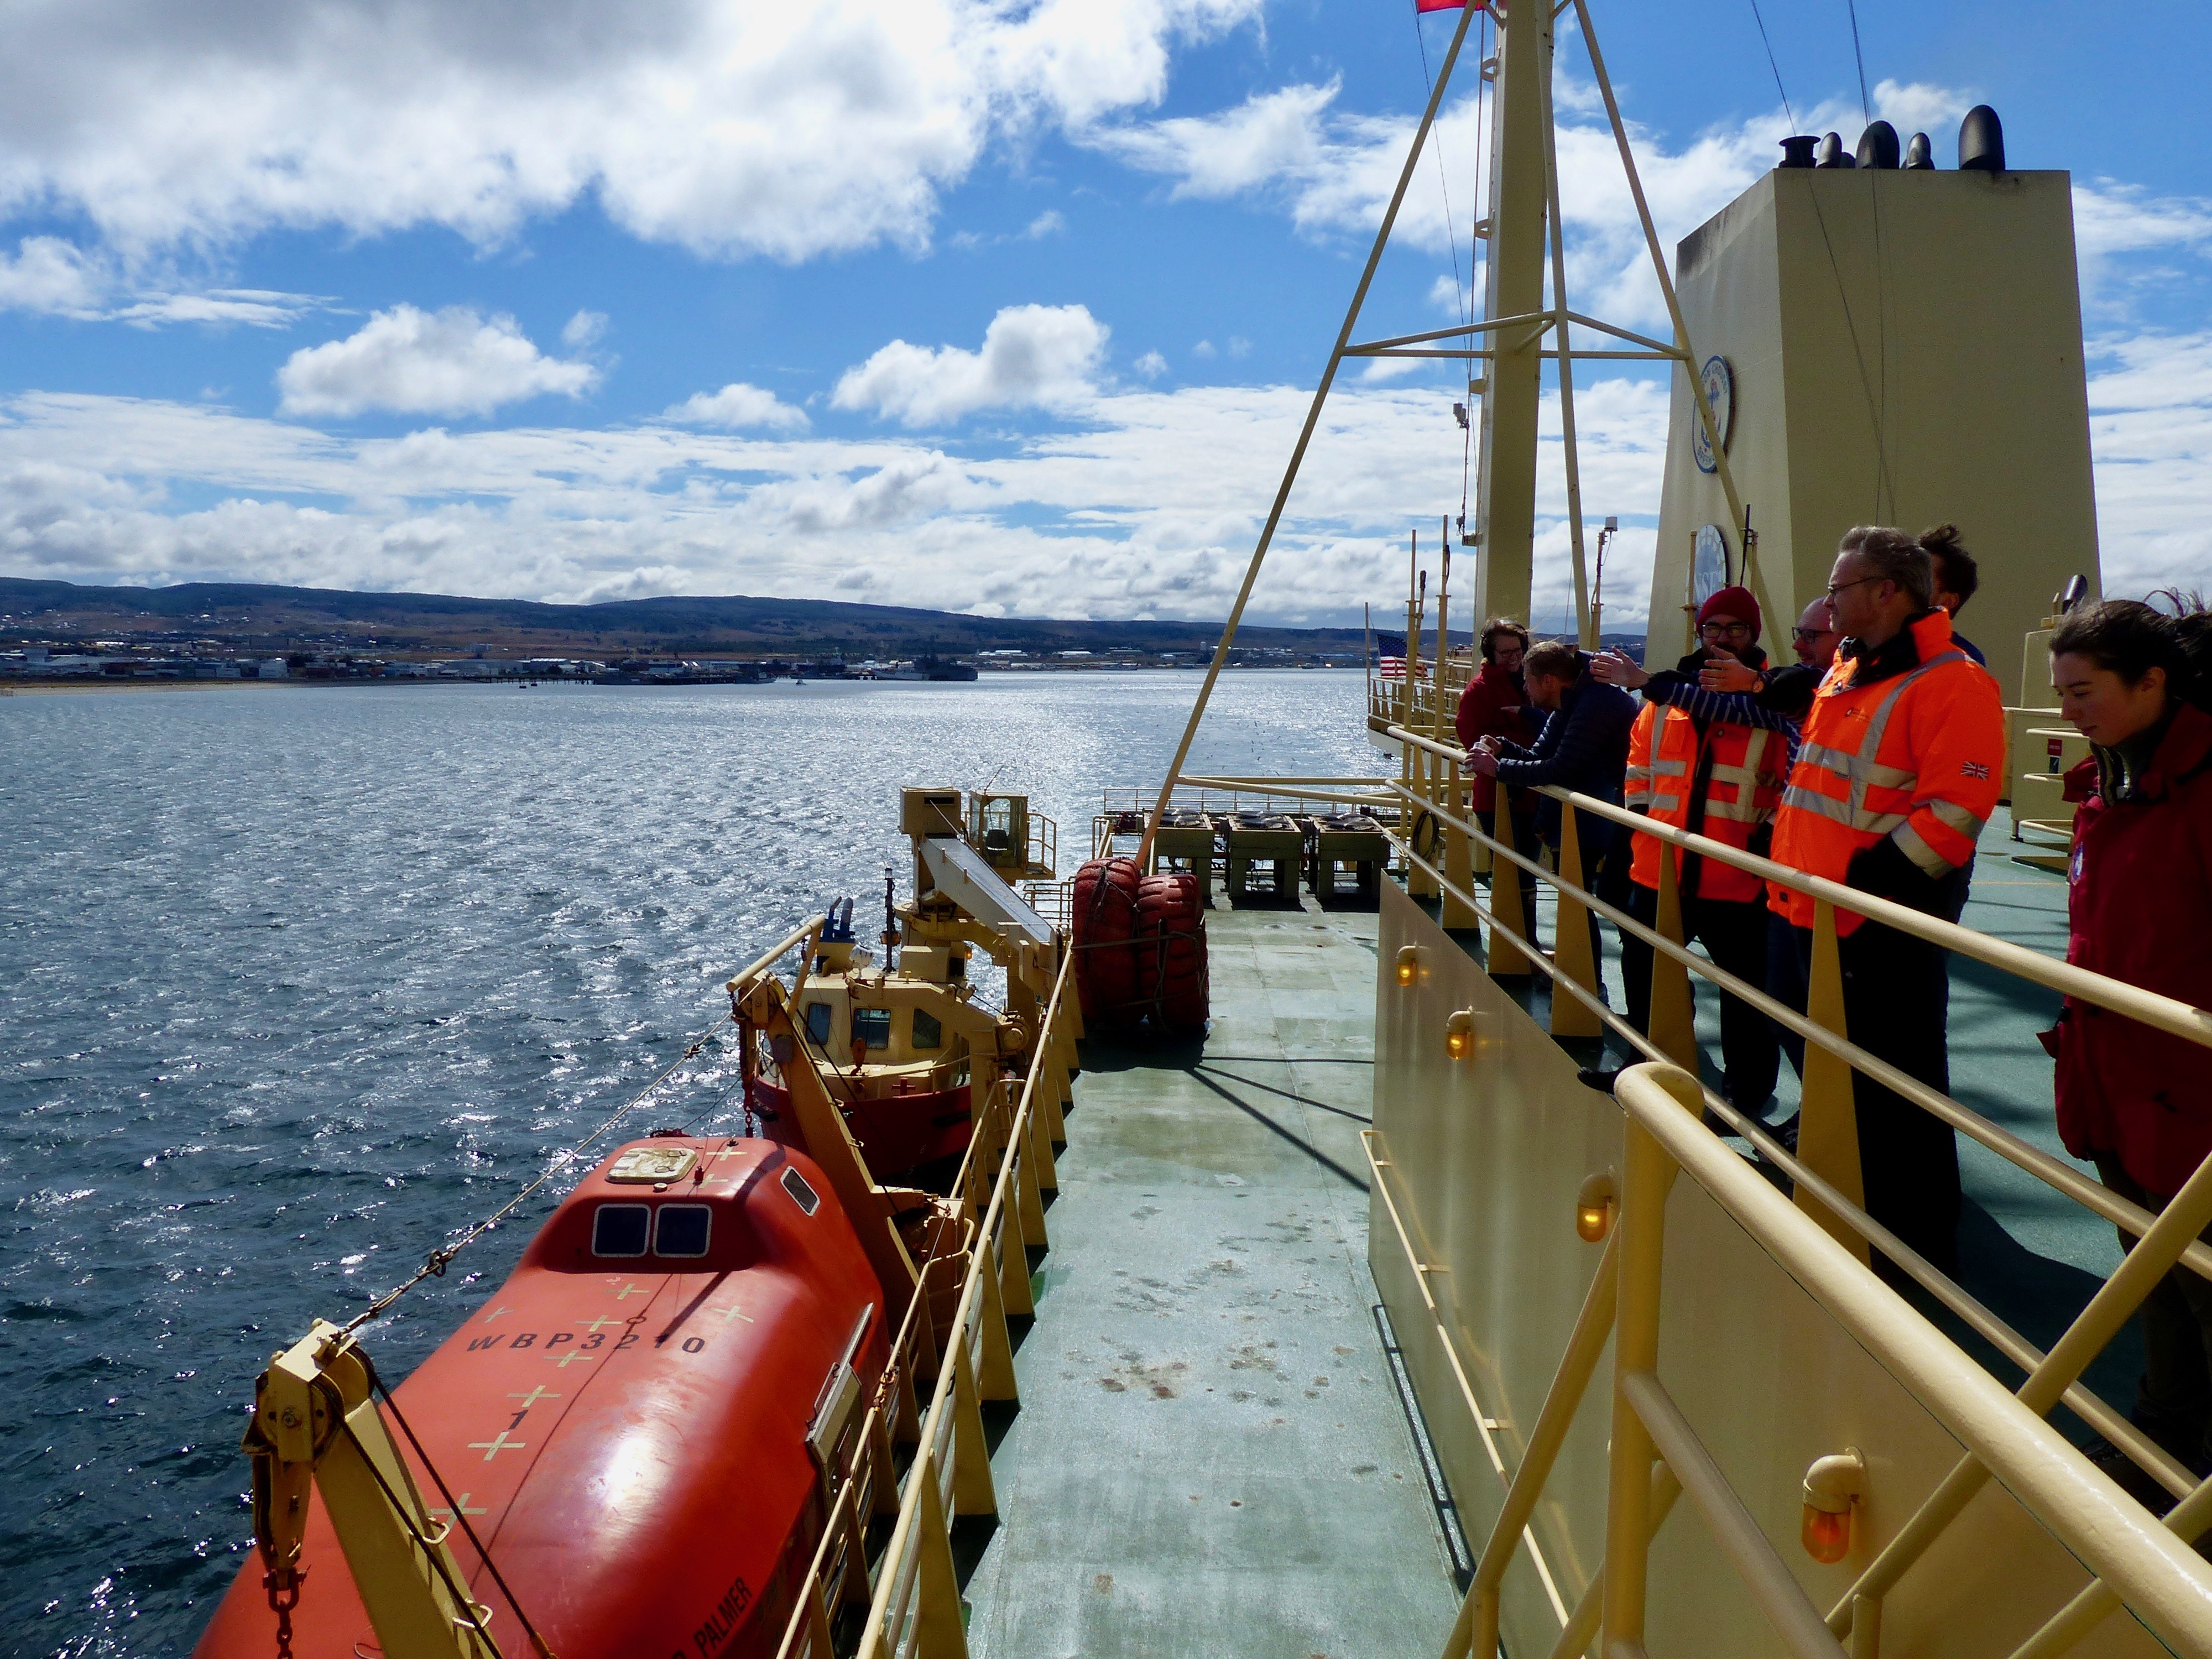 The Palmer departs Punta Arenas on its voyage.